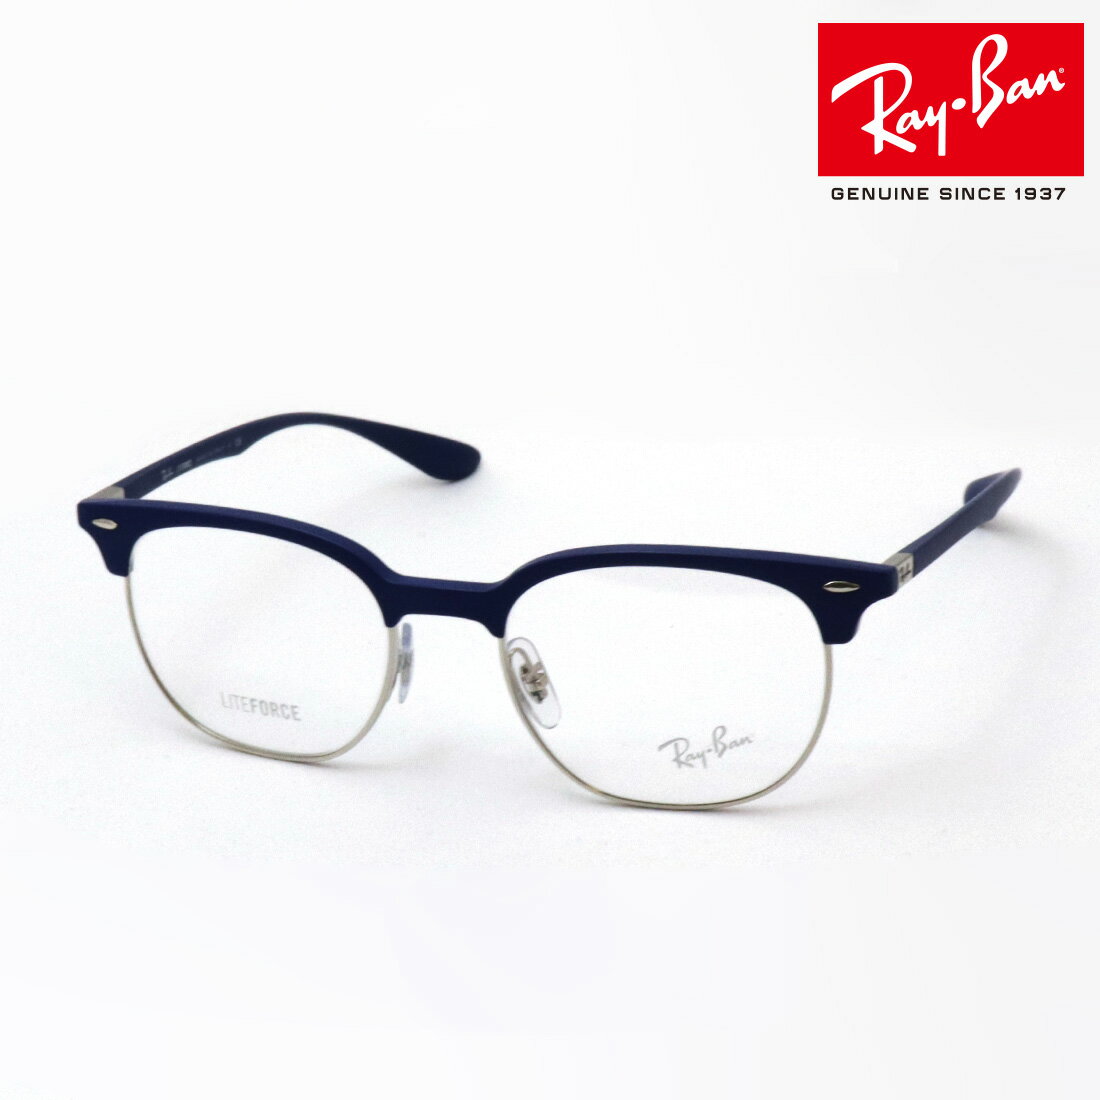 レイバン メガネ メンズ プレミア生産終了モデル 正規レイバン日本最大級の品揃え レイバン メガネ フレーム Ray-Ban RX7186 5207 51 伊達メガネ 度付き ブルーライト カット 眼鏡 RayBan Made In Italy スクエア ブルー系